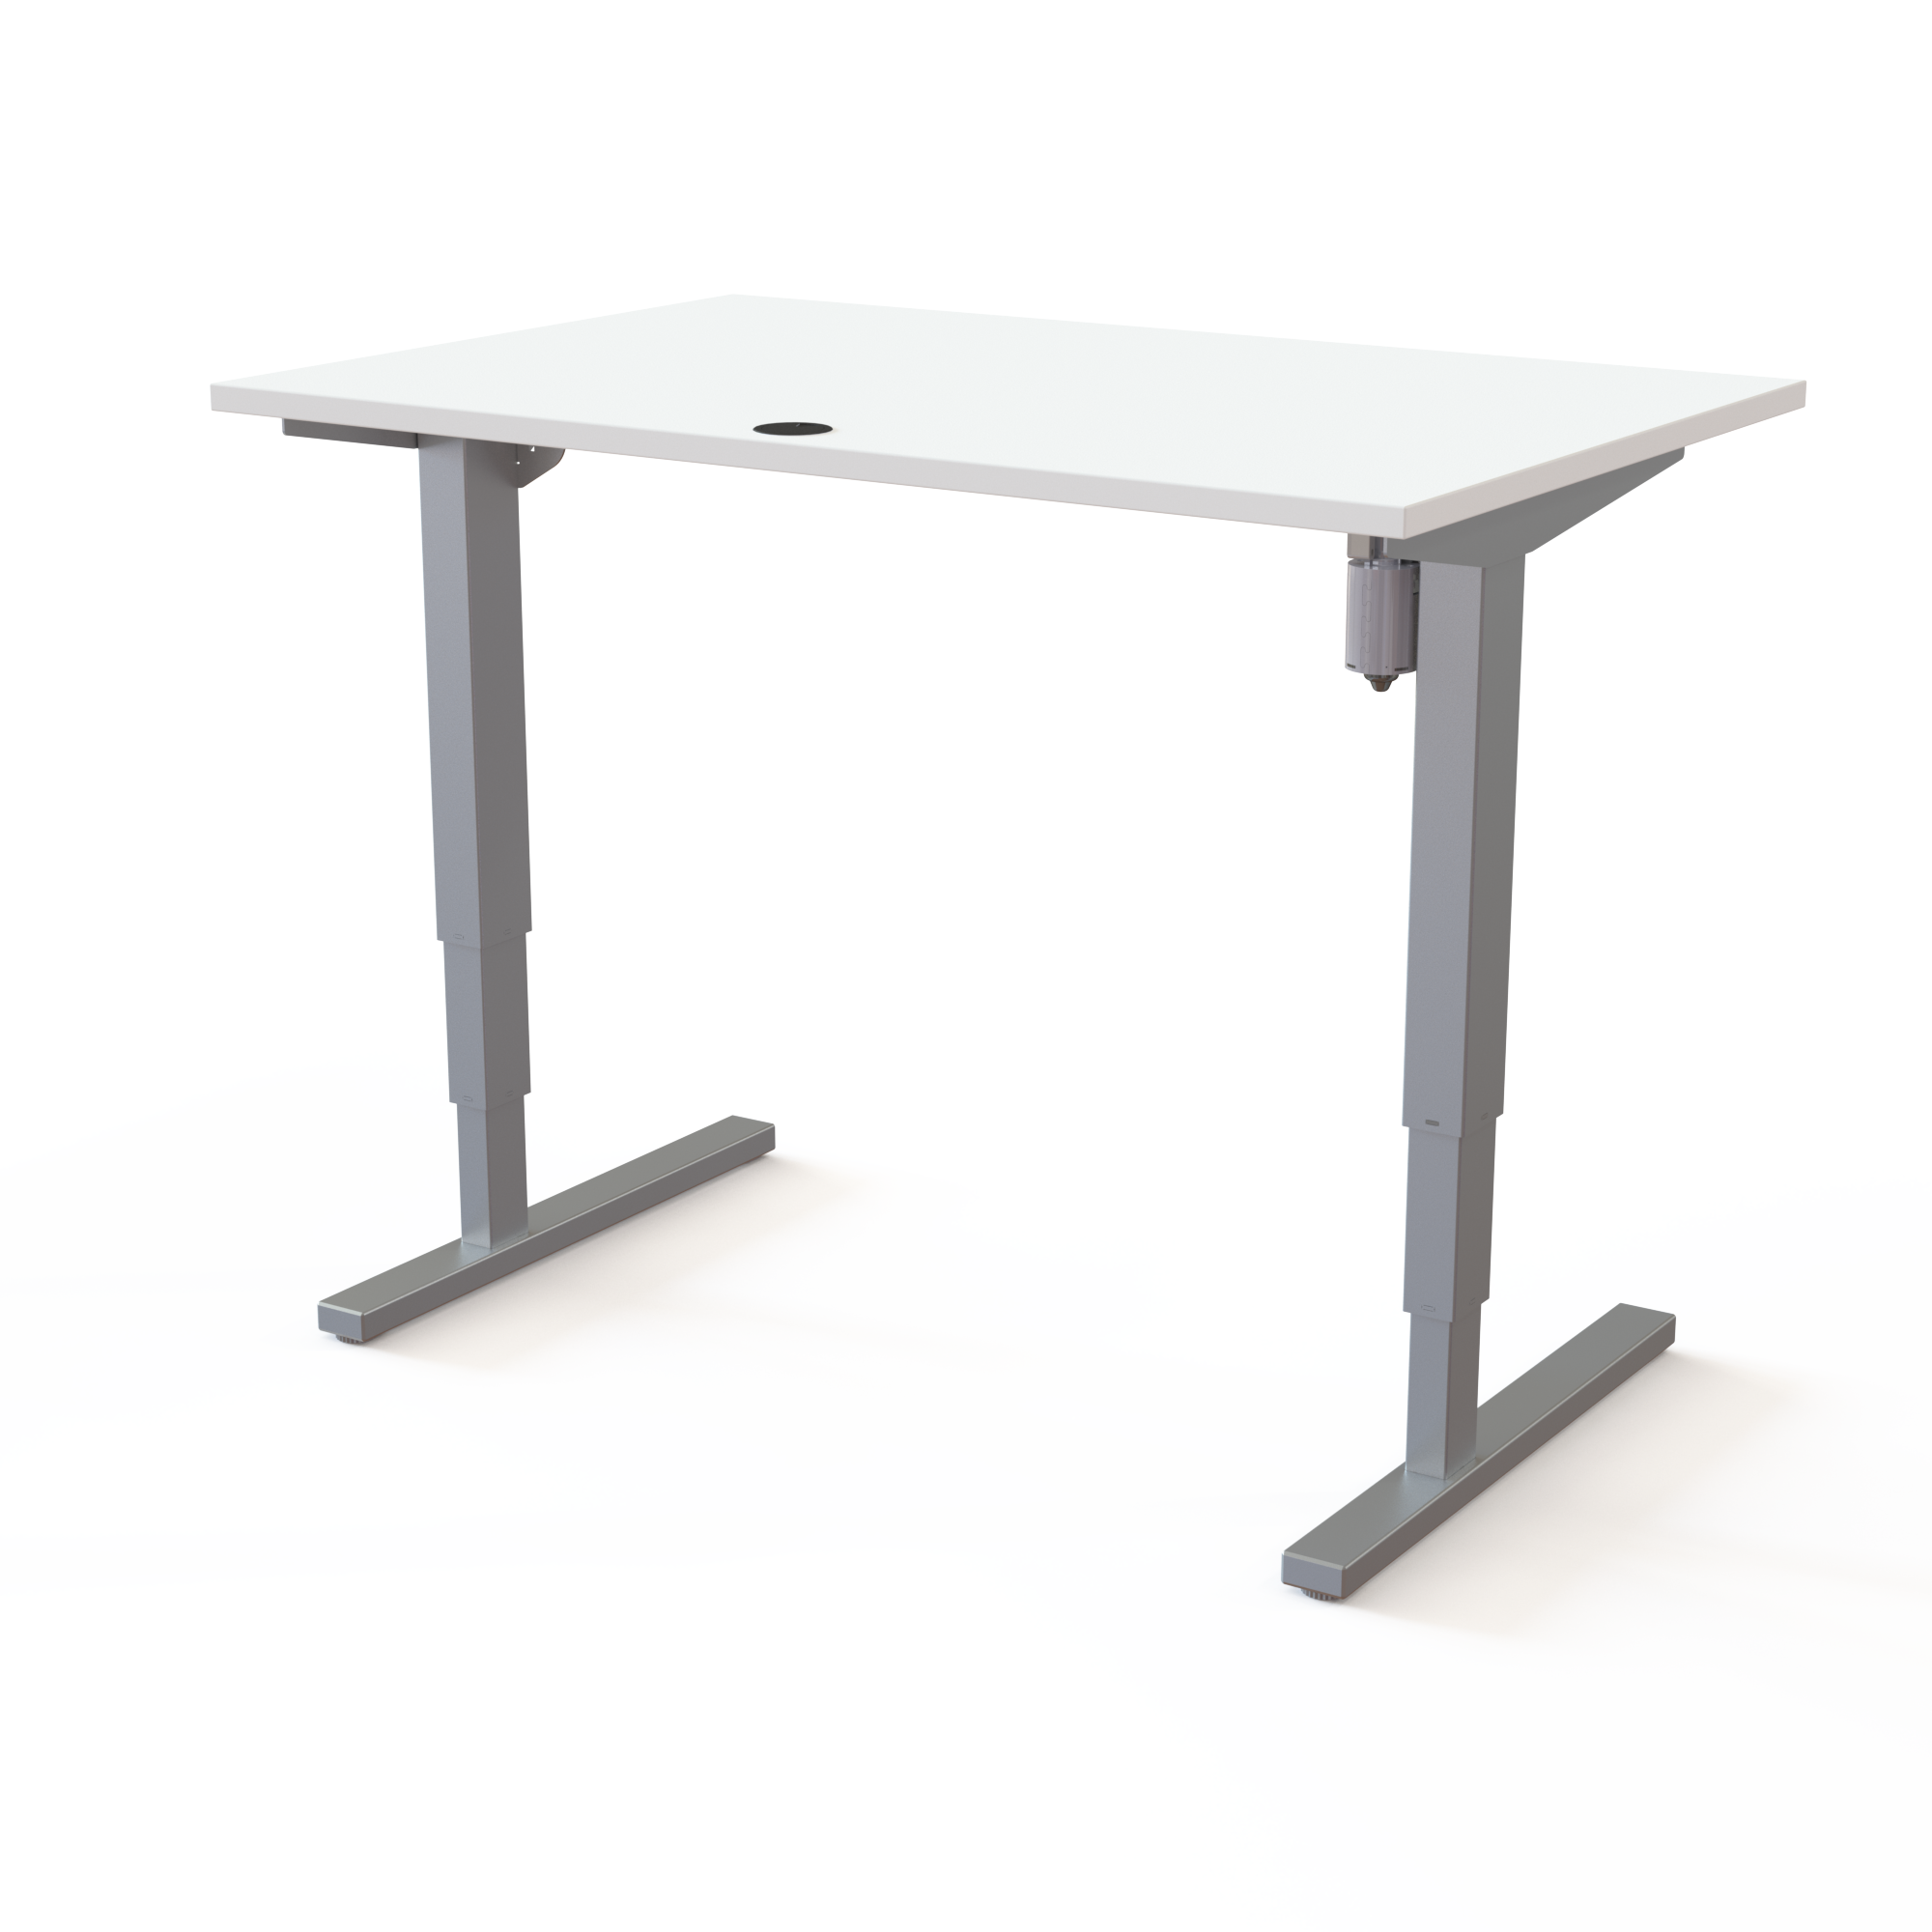 Schreibtisch steh/sitz | 120x80 cm | Weiß mit grauem Gestell